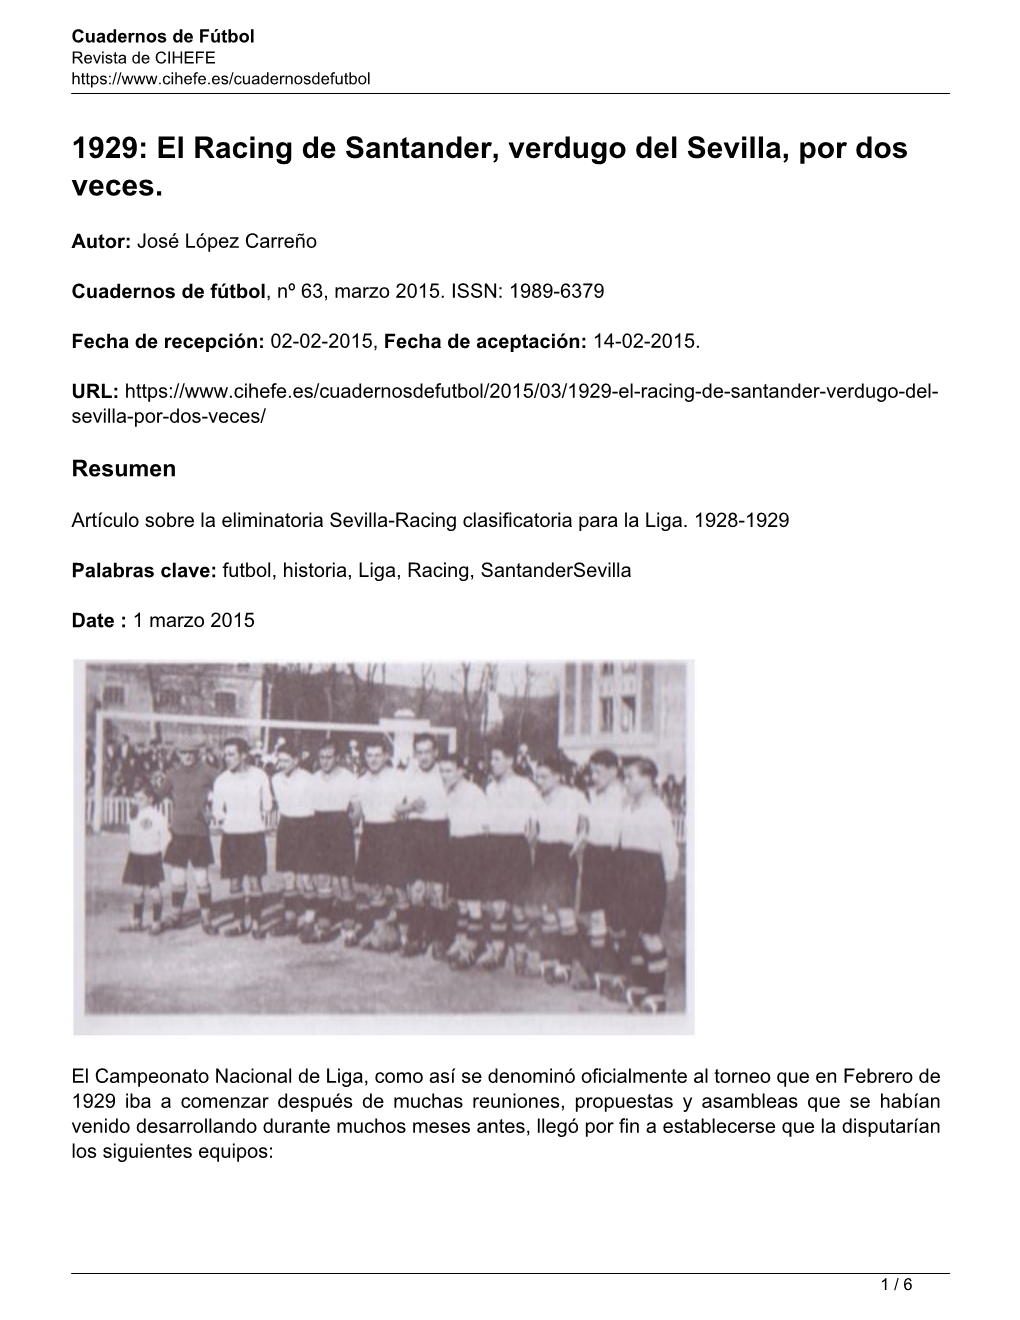 1929: El Racing De Santander, Verdugo Del Sevilla, Por Dos Veces